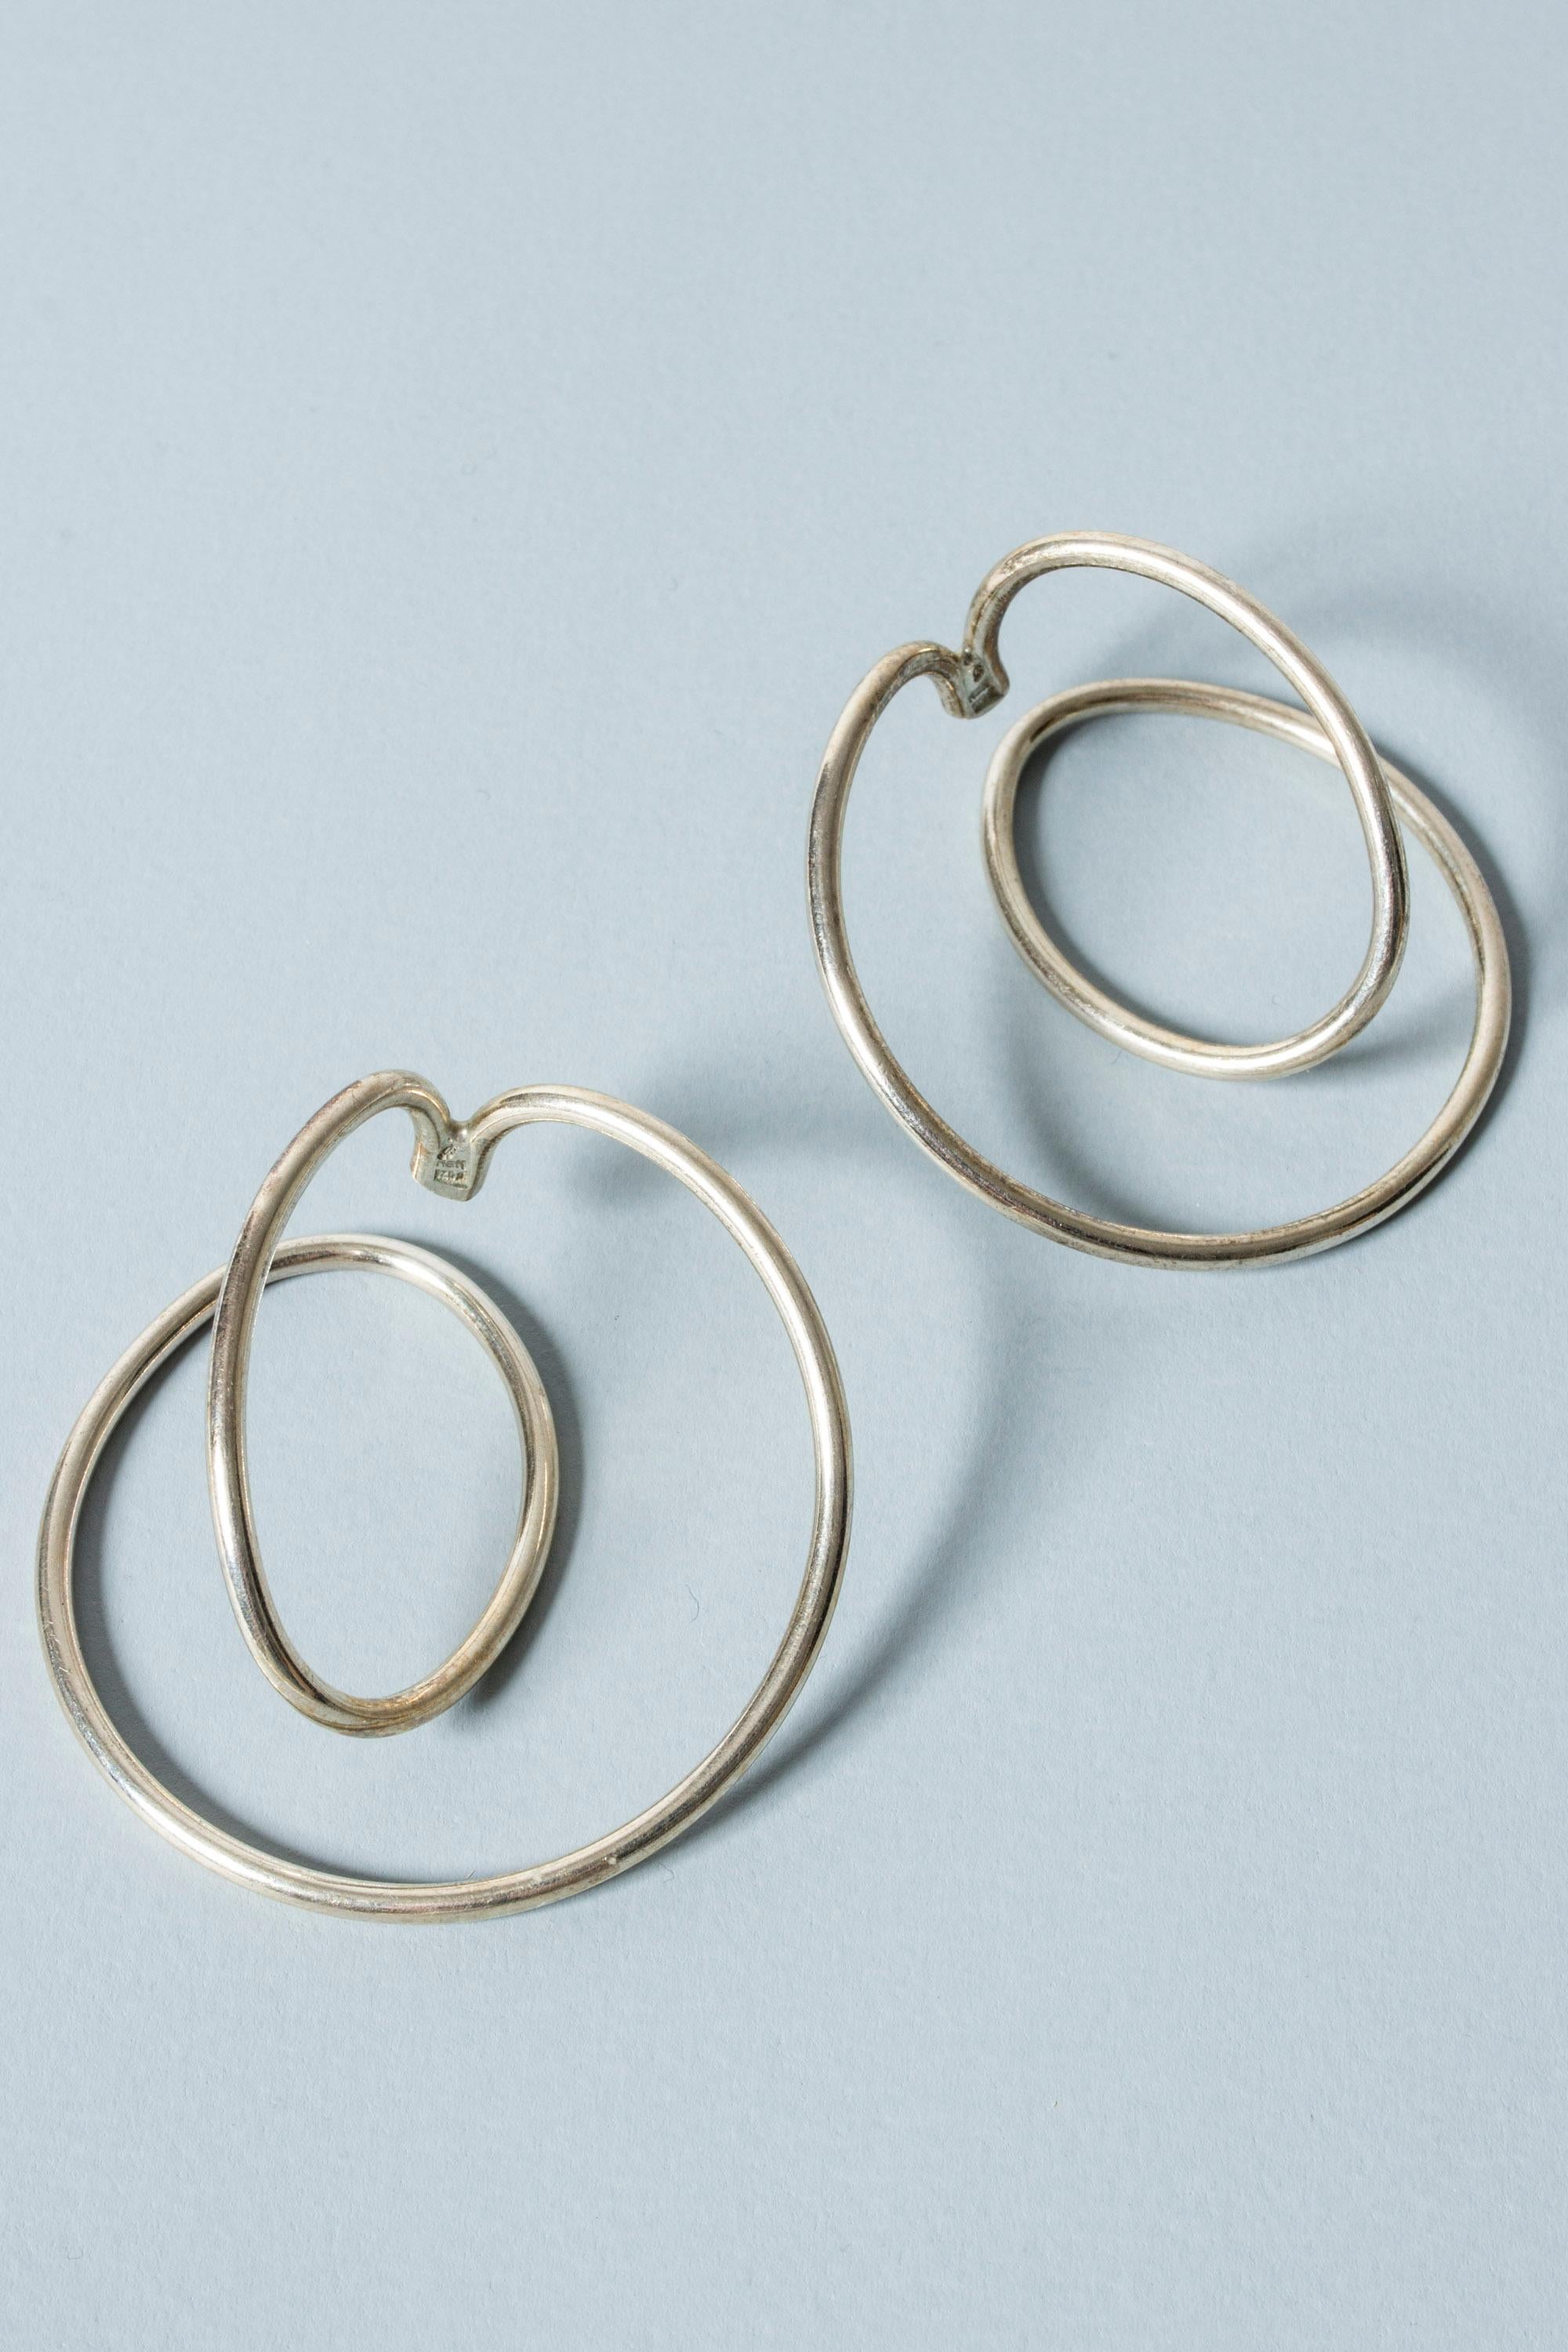 Women's Silver “Swing” Earrings by Allan Scharff, Denmark, 1980s